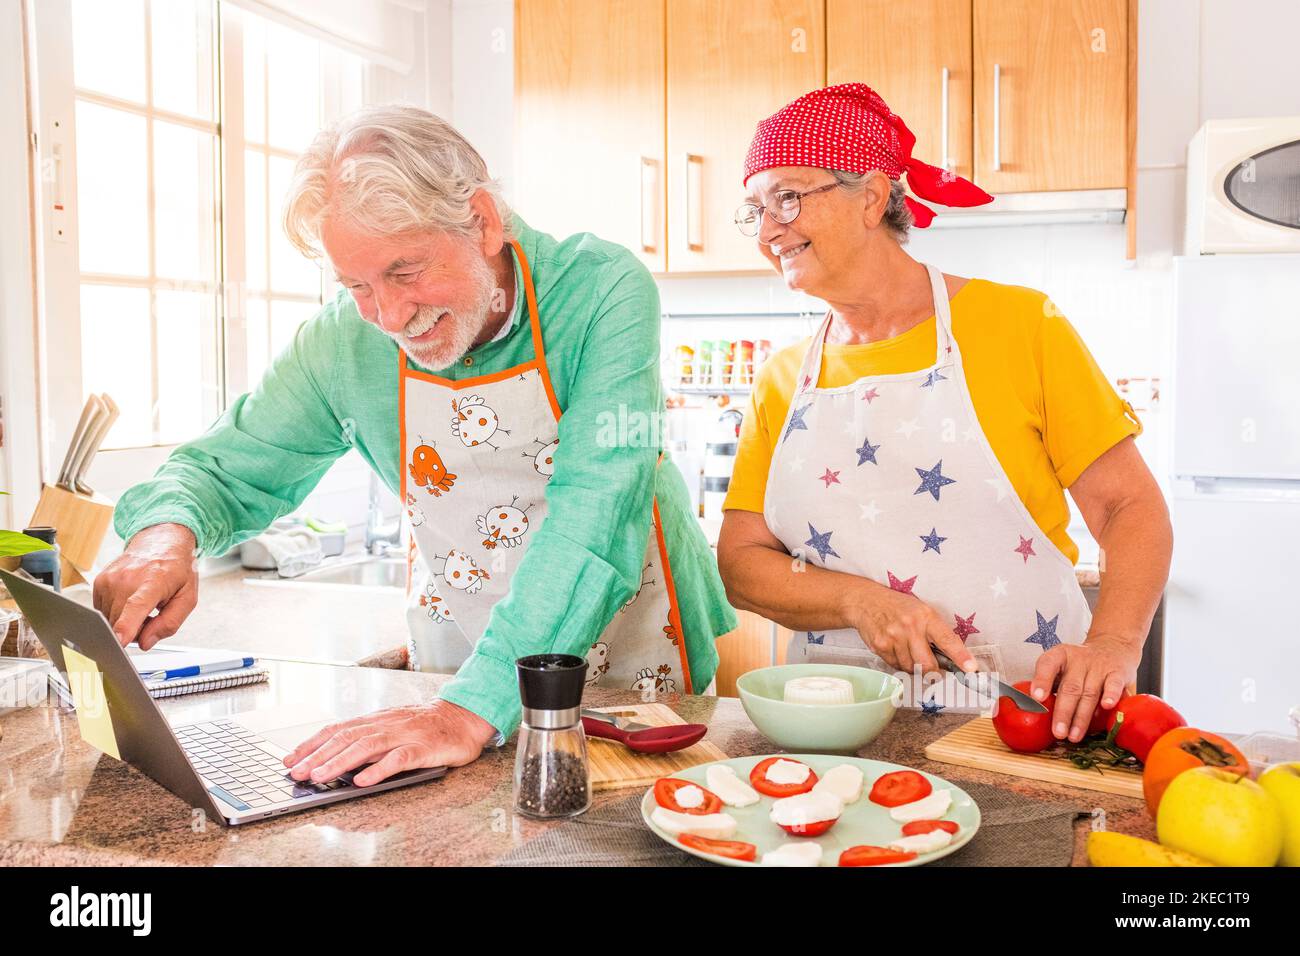 dos felices personas mayores cocinando juntos en la cocina aprendiendo y siguiendo un video tutorial de cocinar en el ordenador portátil - preparando juntos alimentos saludables Foto de stock